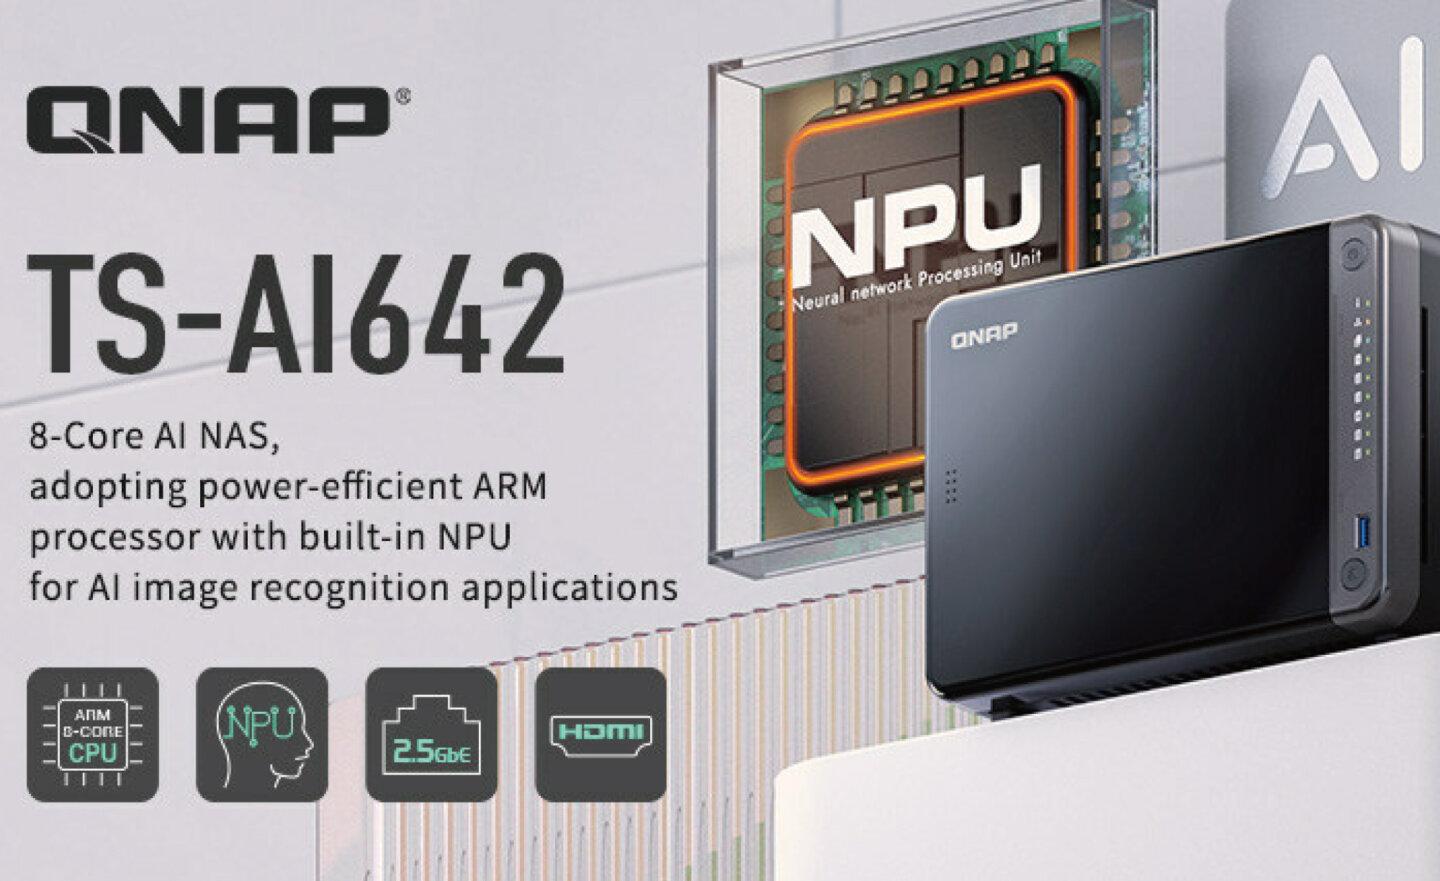 QNAP 以 ARM 架構打造 AI NAS，適用 AI 影像辨識與智慧監控